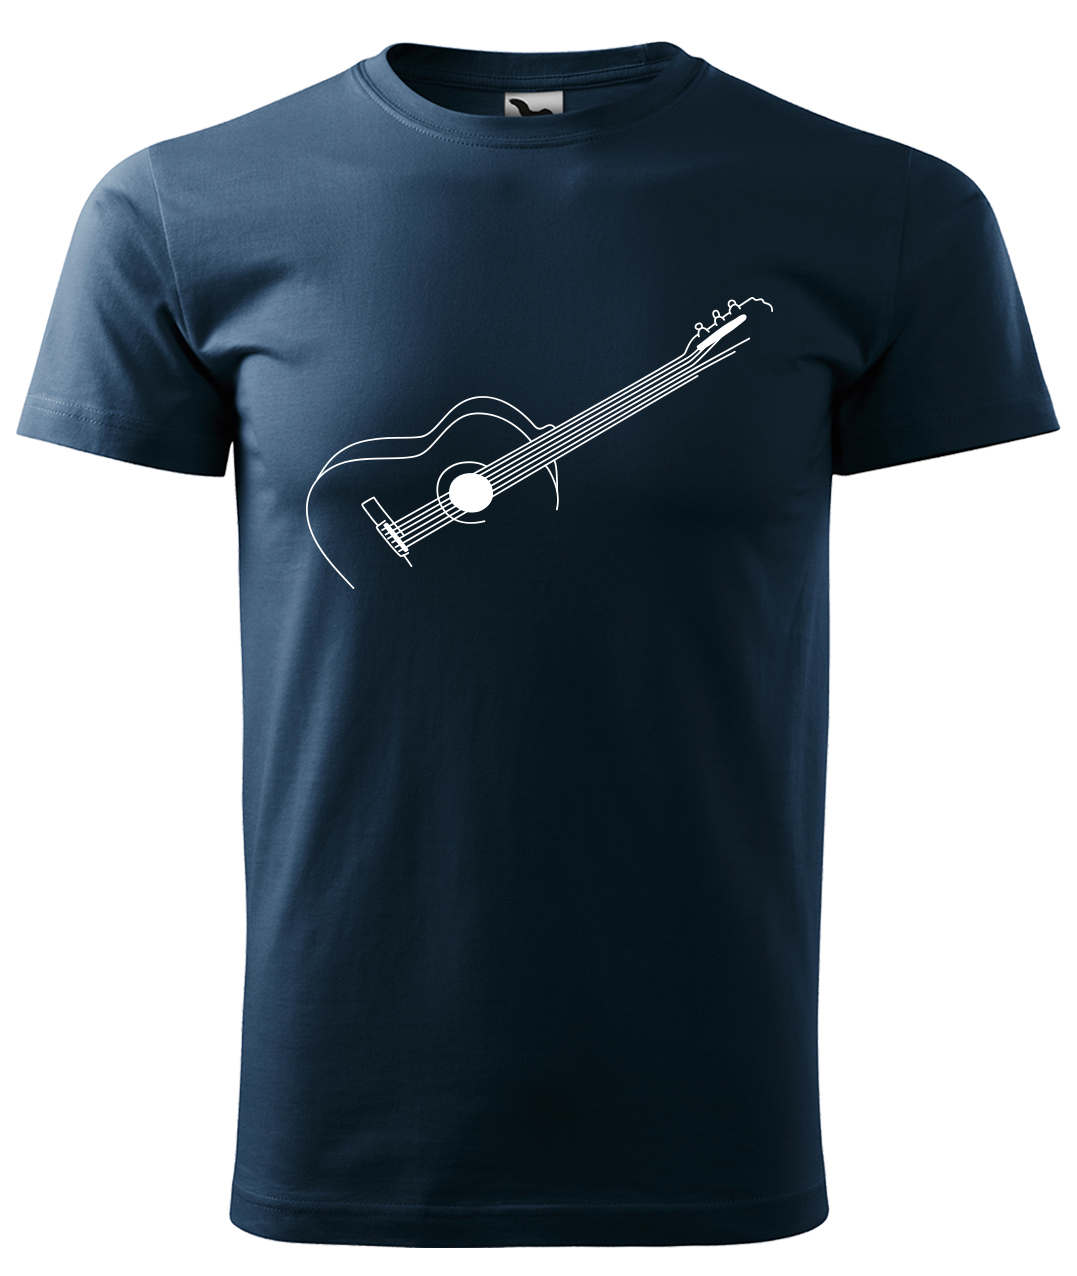 Dětské tričko s kytarou - Stylizovaná kytara Velikost: 12 let / 158 cm, Barva: Námořní modrá (02), Délka rukávu: Krátký rukáv